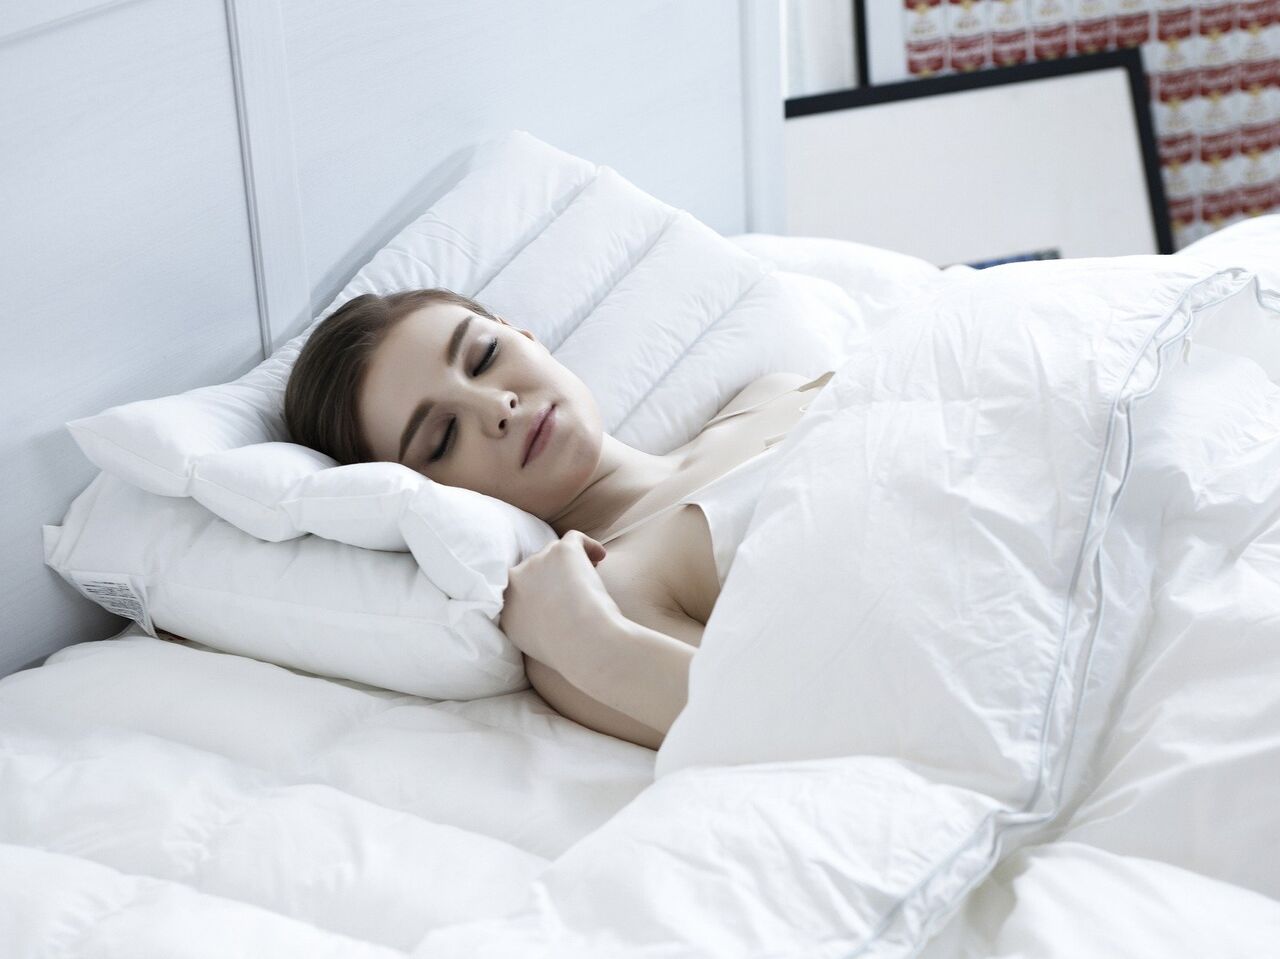 Психолог объяснила, почему полезно спать без одежды